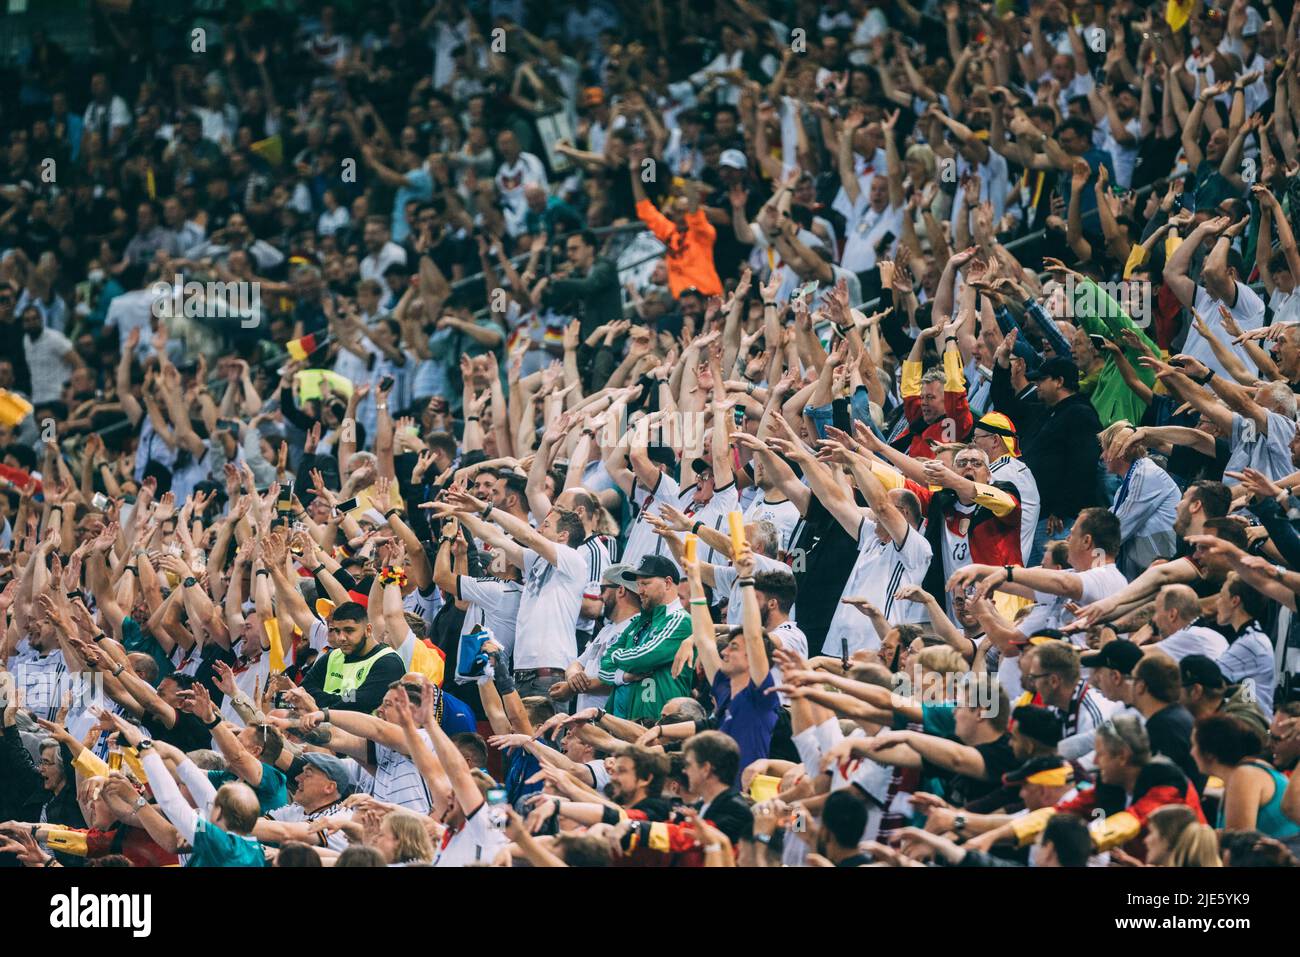 Mönchengladbach, Borussia-Park, 14.06.22: Laola in der Fankurve, Fanblock, beim Länderspiel zwischen Deutschland vs. Italien.  Foto: pressefoto Mika V Stock Photo